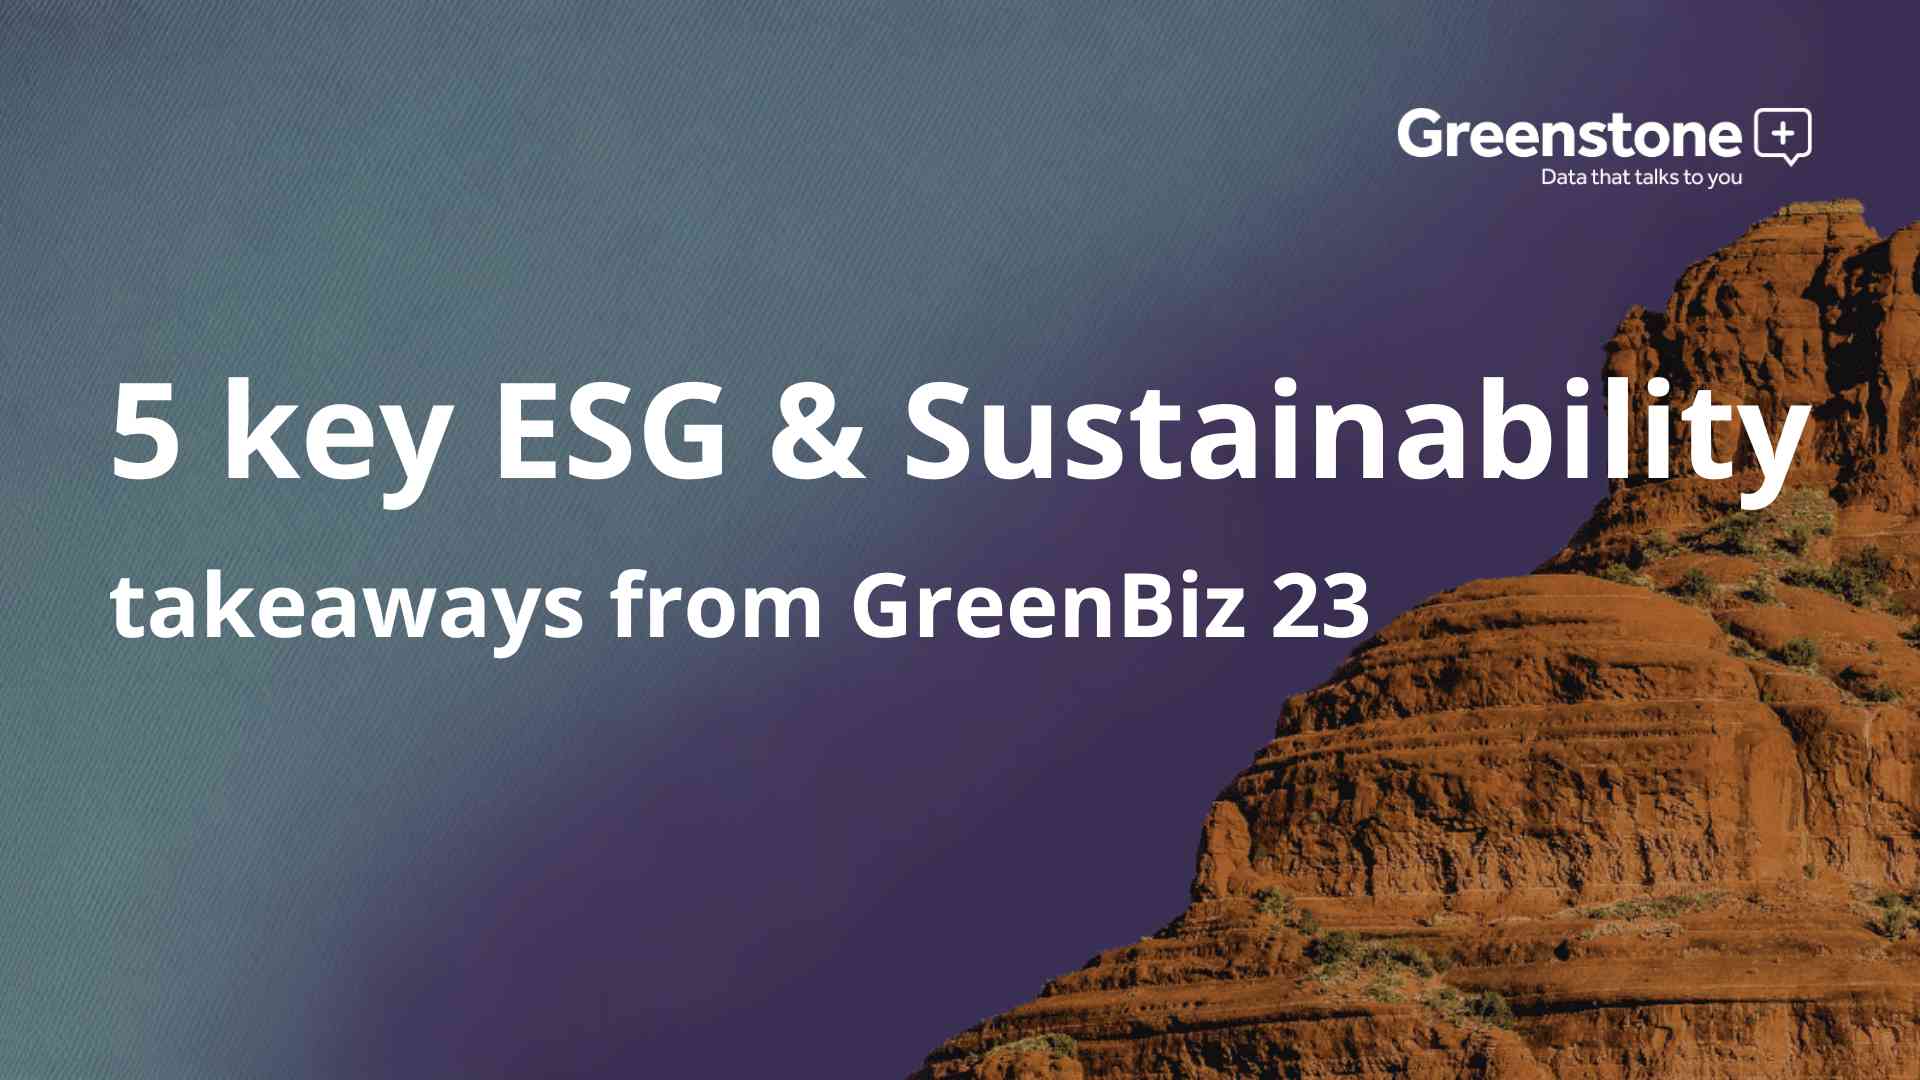 5 key ESG & Sustainability takeaways from GreenBiz 23